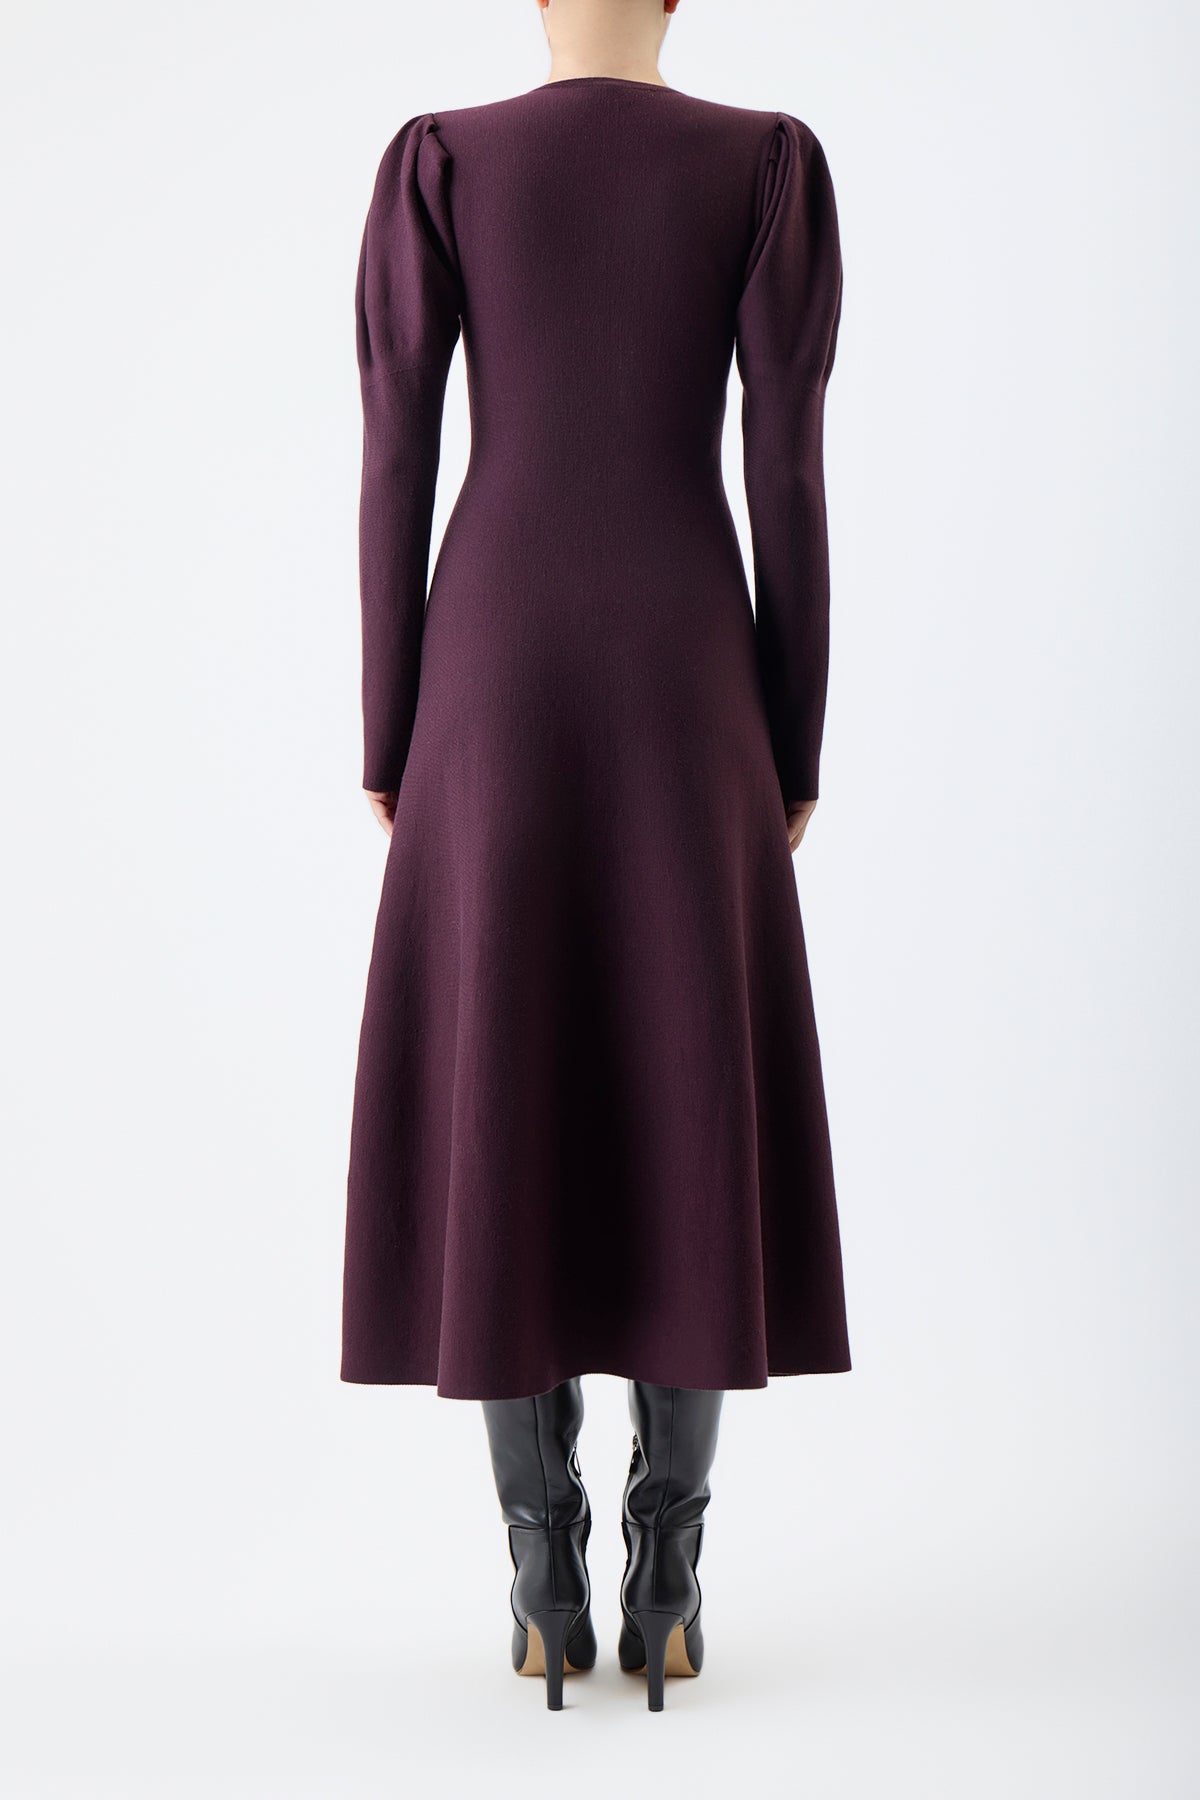 Hannah Knit Dress in Deep Bordeaux Cashmere Merino Wool